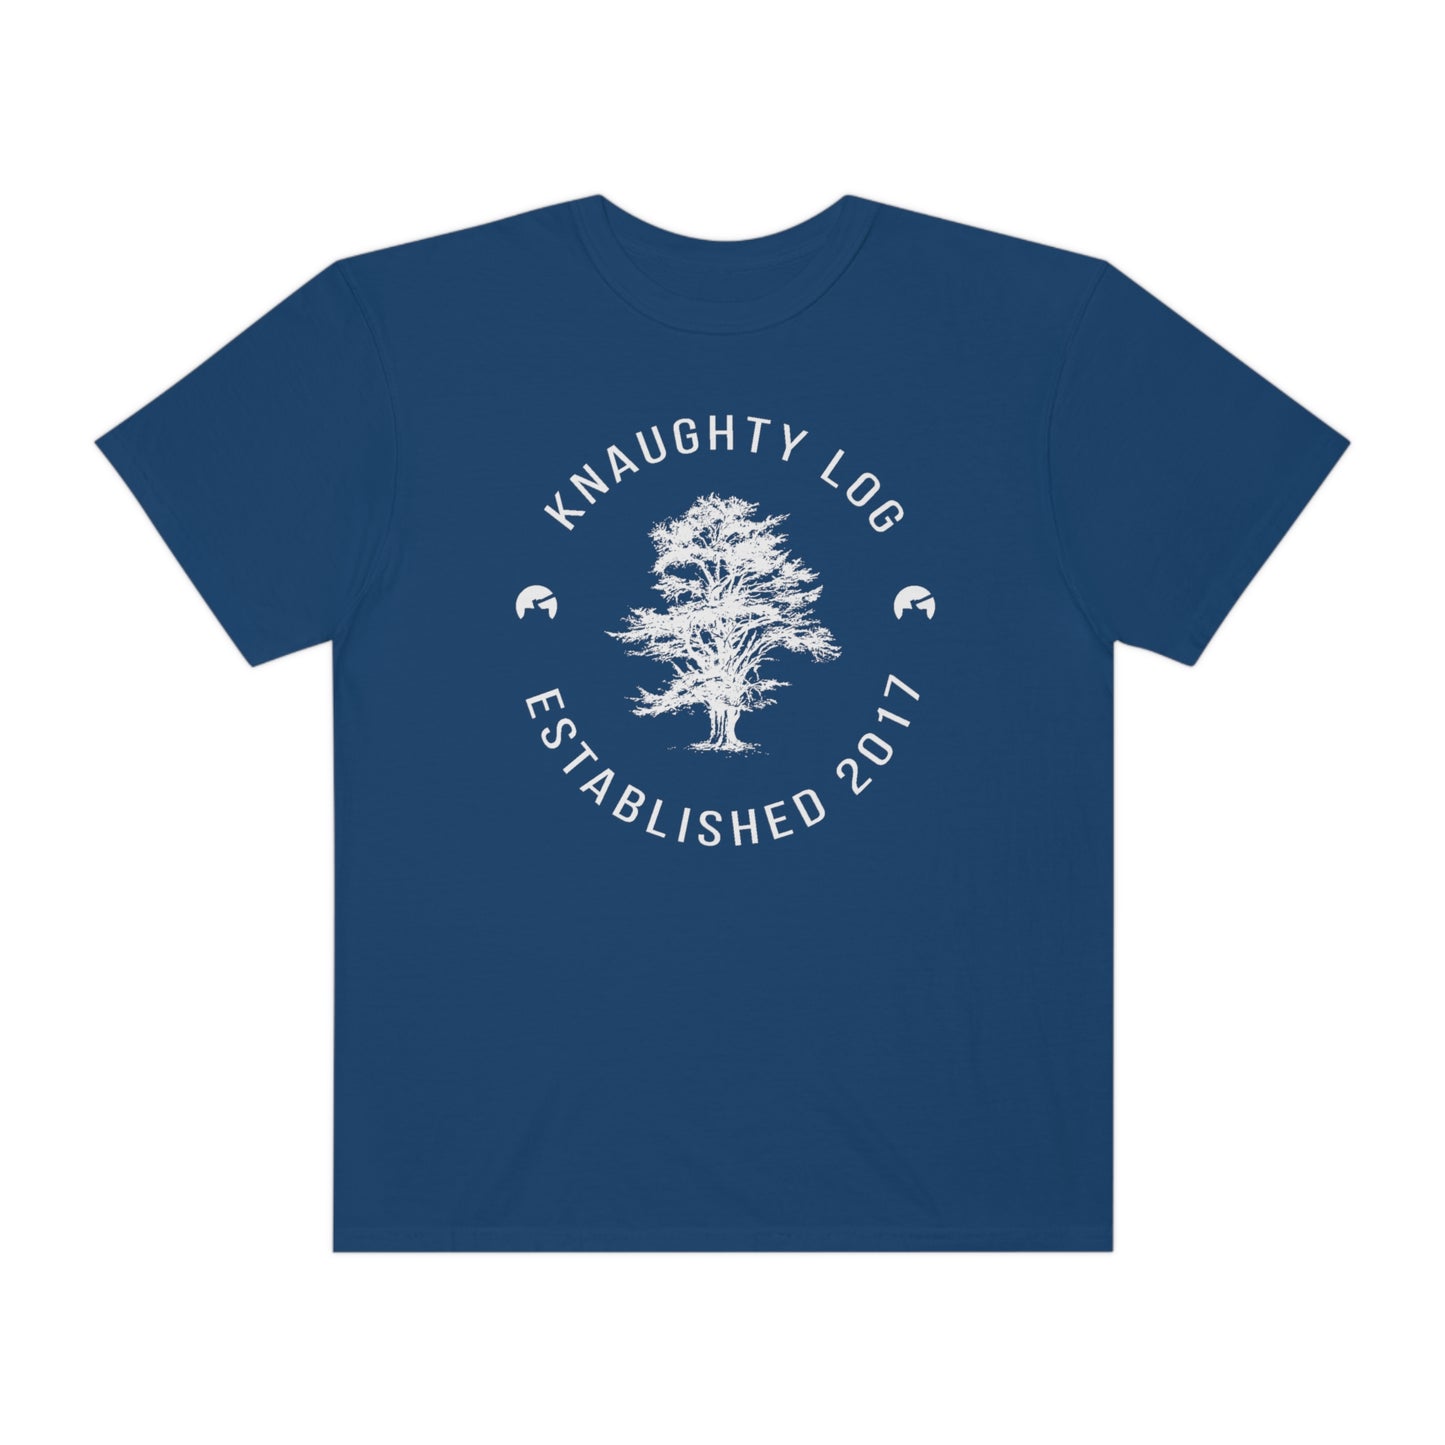 Knaughty Log Tree Graphic T-Shirt